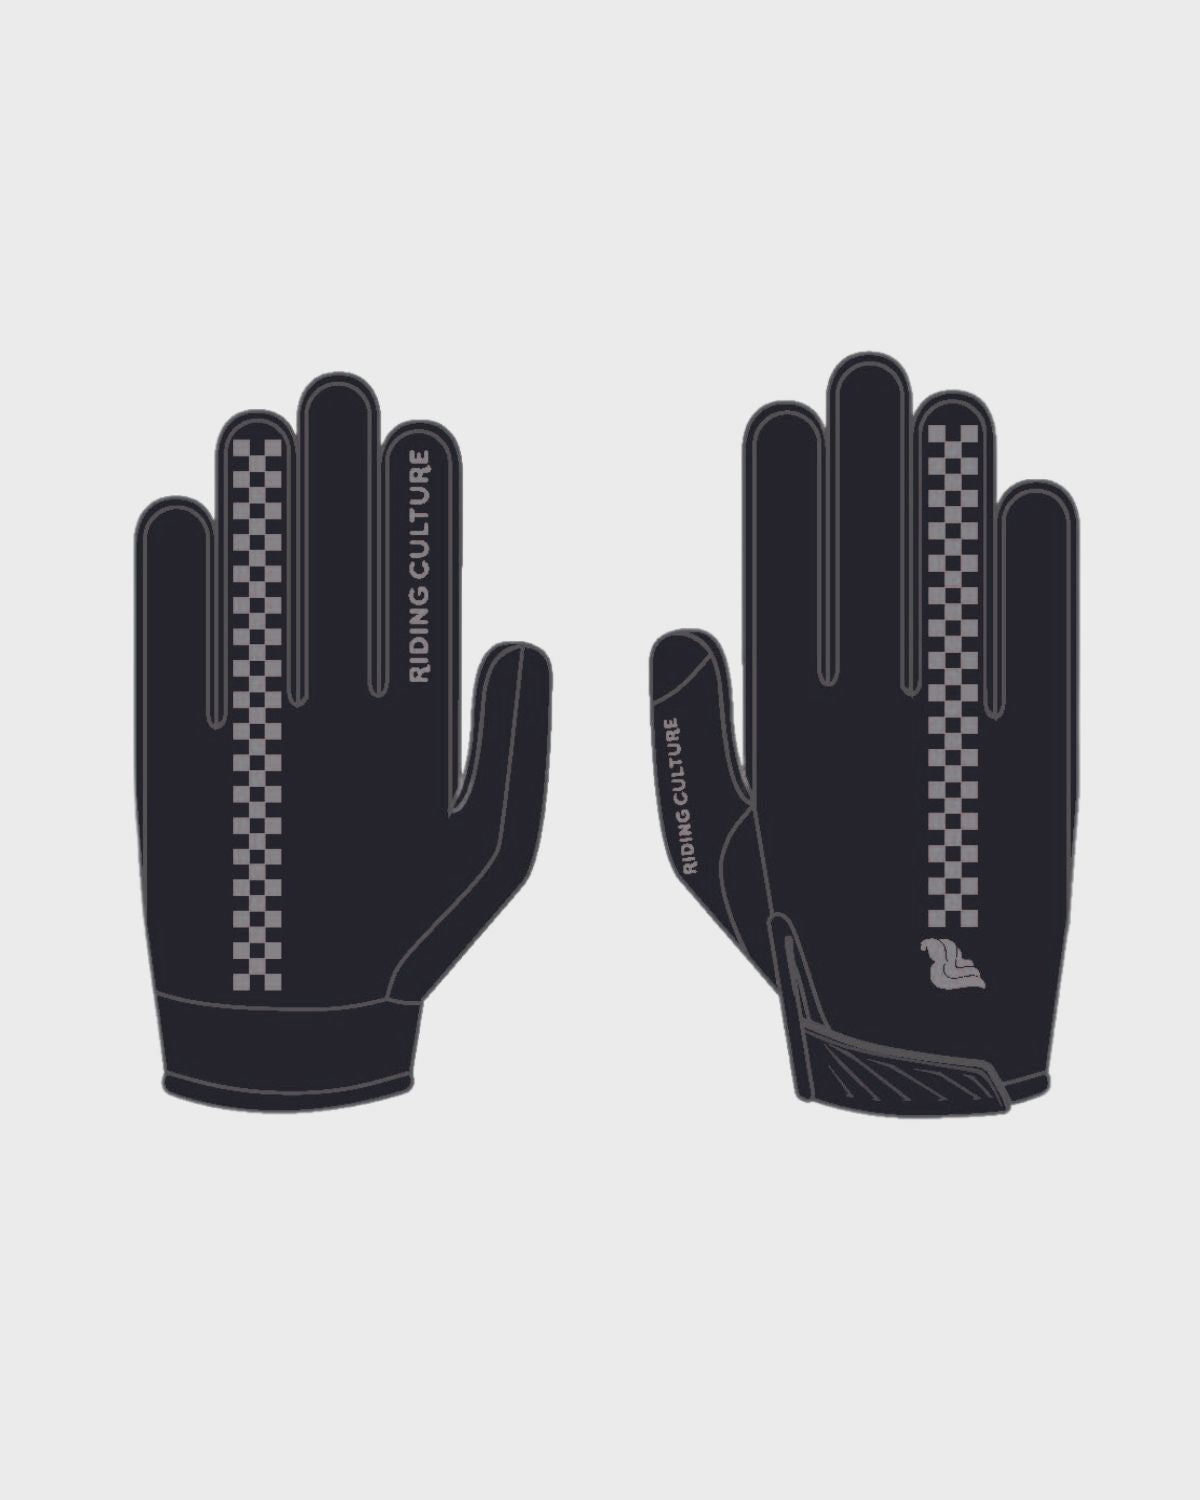 Sender Gloves 1.1